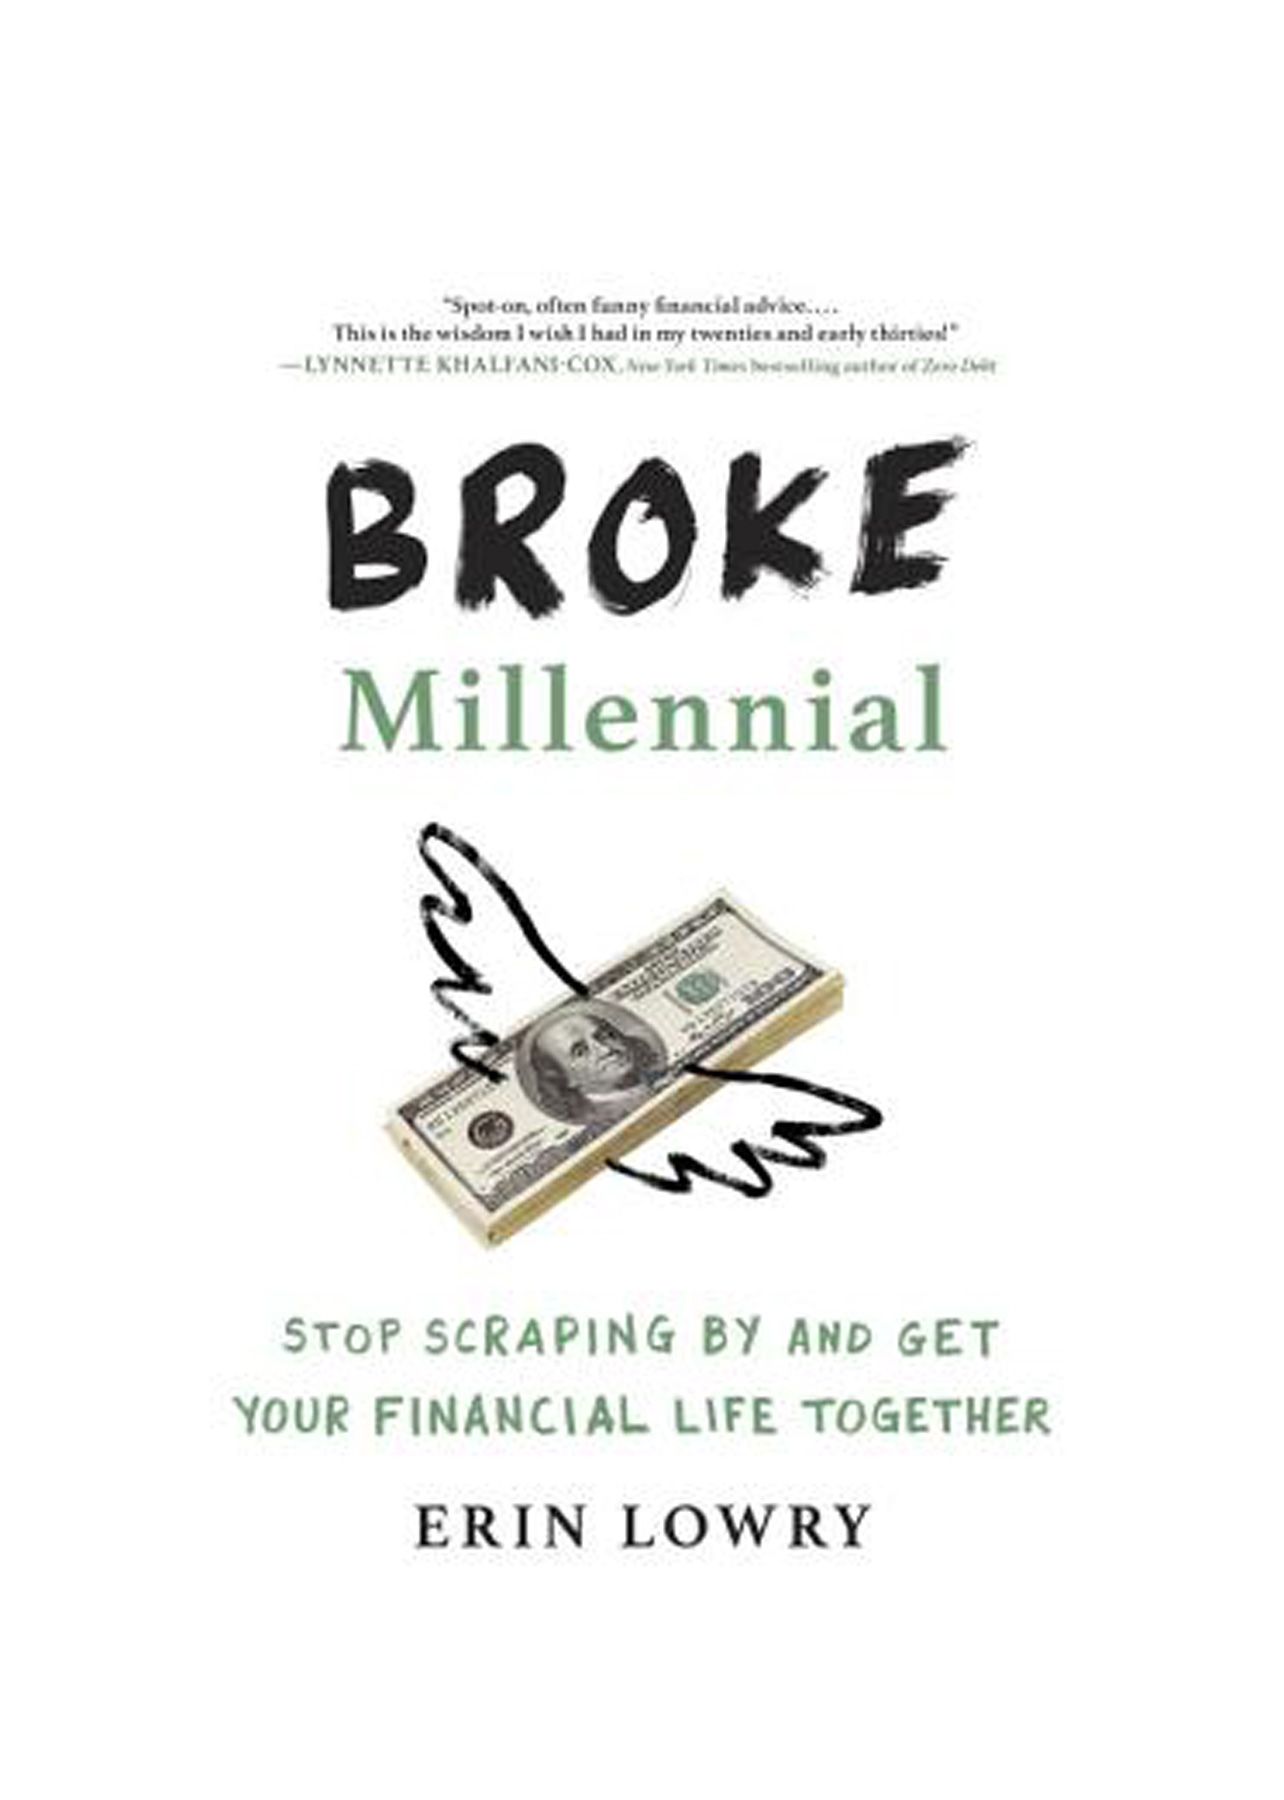 หนังสือดีที่ควรอ่านในยุค 20 ของคุณ: 'Broke Millennial: Stop Scraping By and Get Your Financial Life Together' โดย Erin Lowry